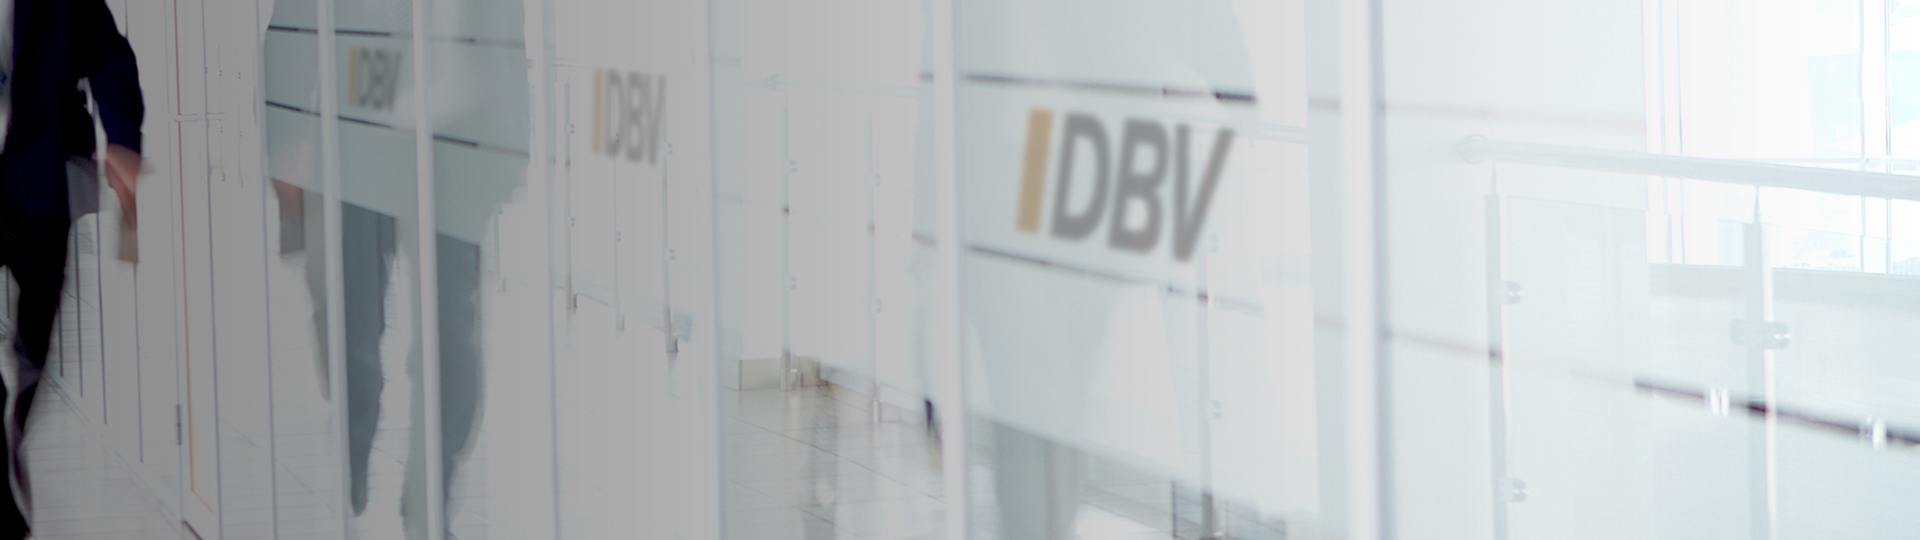 Anwartschaftversicherung | DBV Siegen Daniel Martin